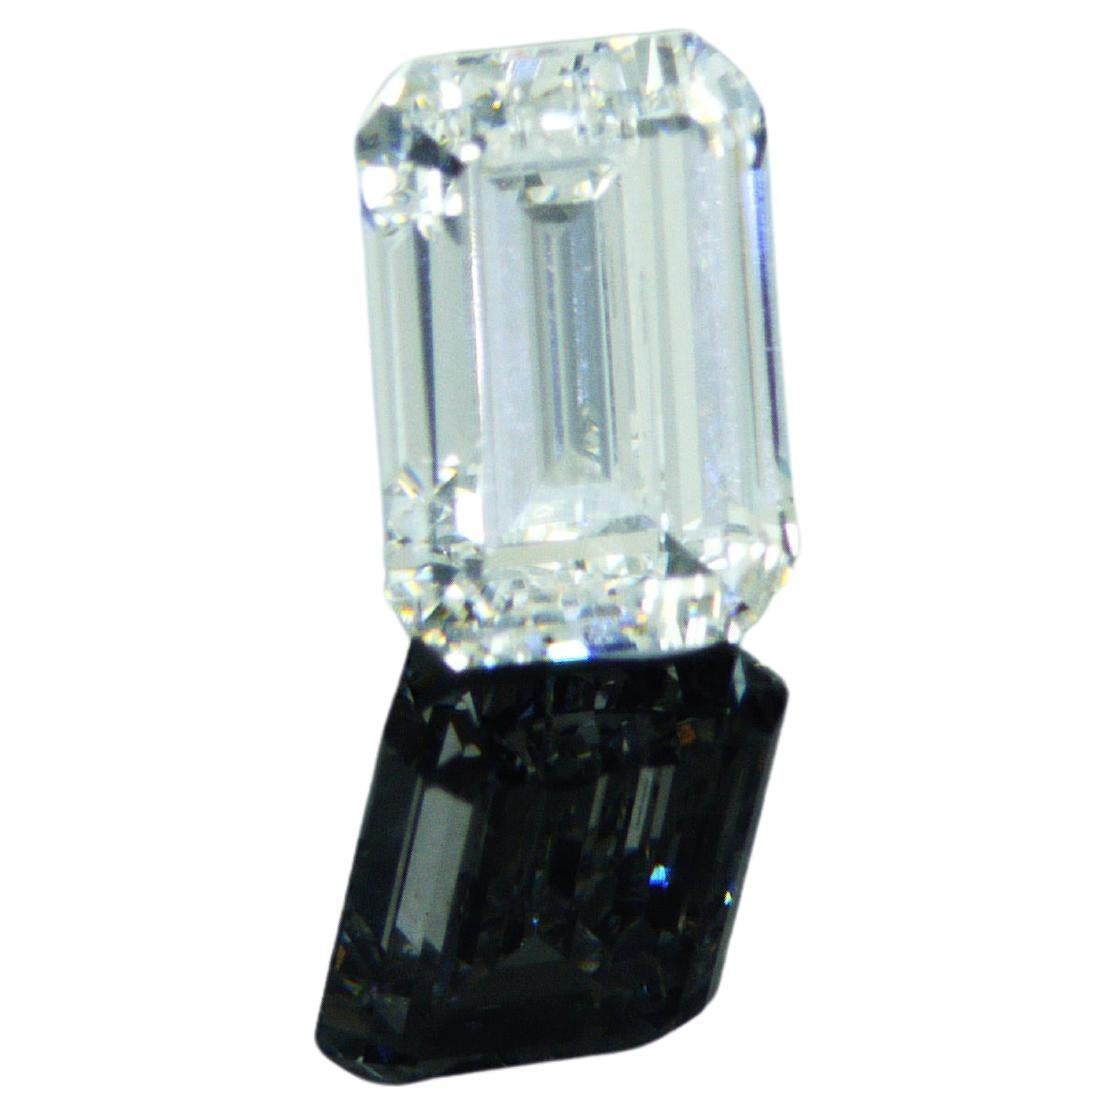 Loop clean (IF) certifié HRDAntwerp avec un diamant naturel en forme d'émeraude de 0,93 carat